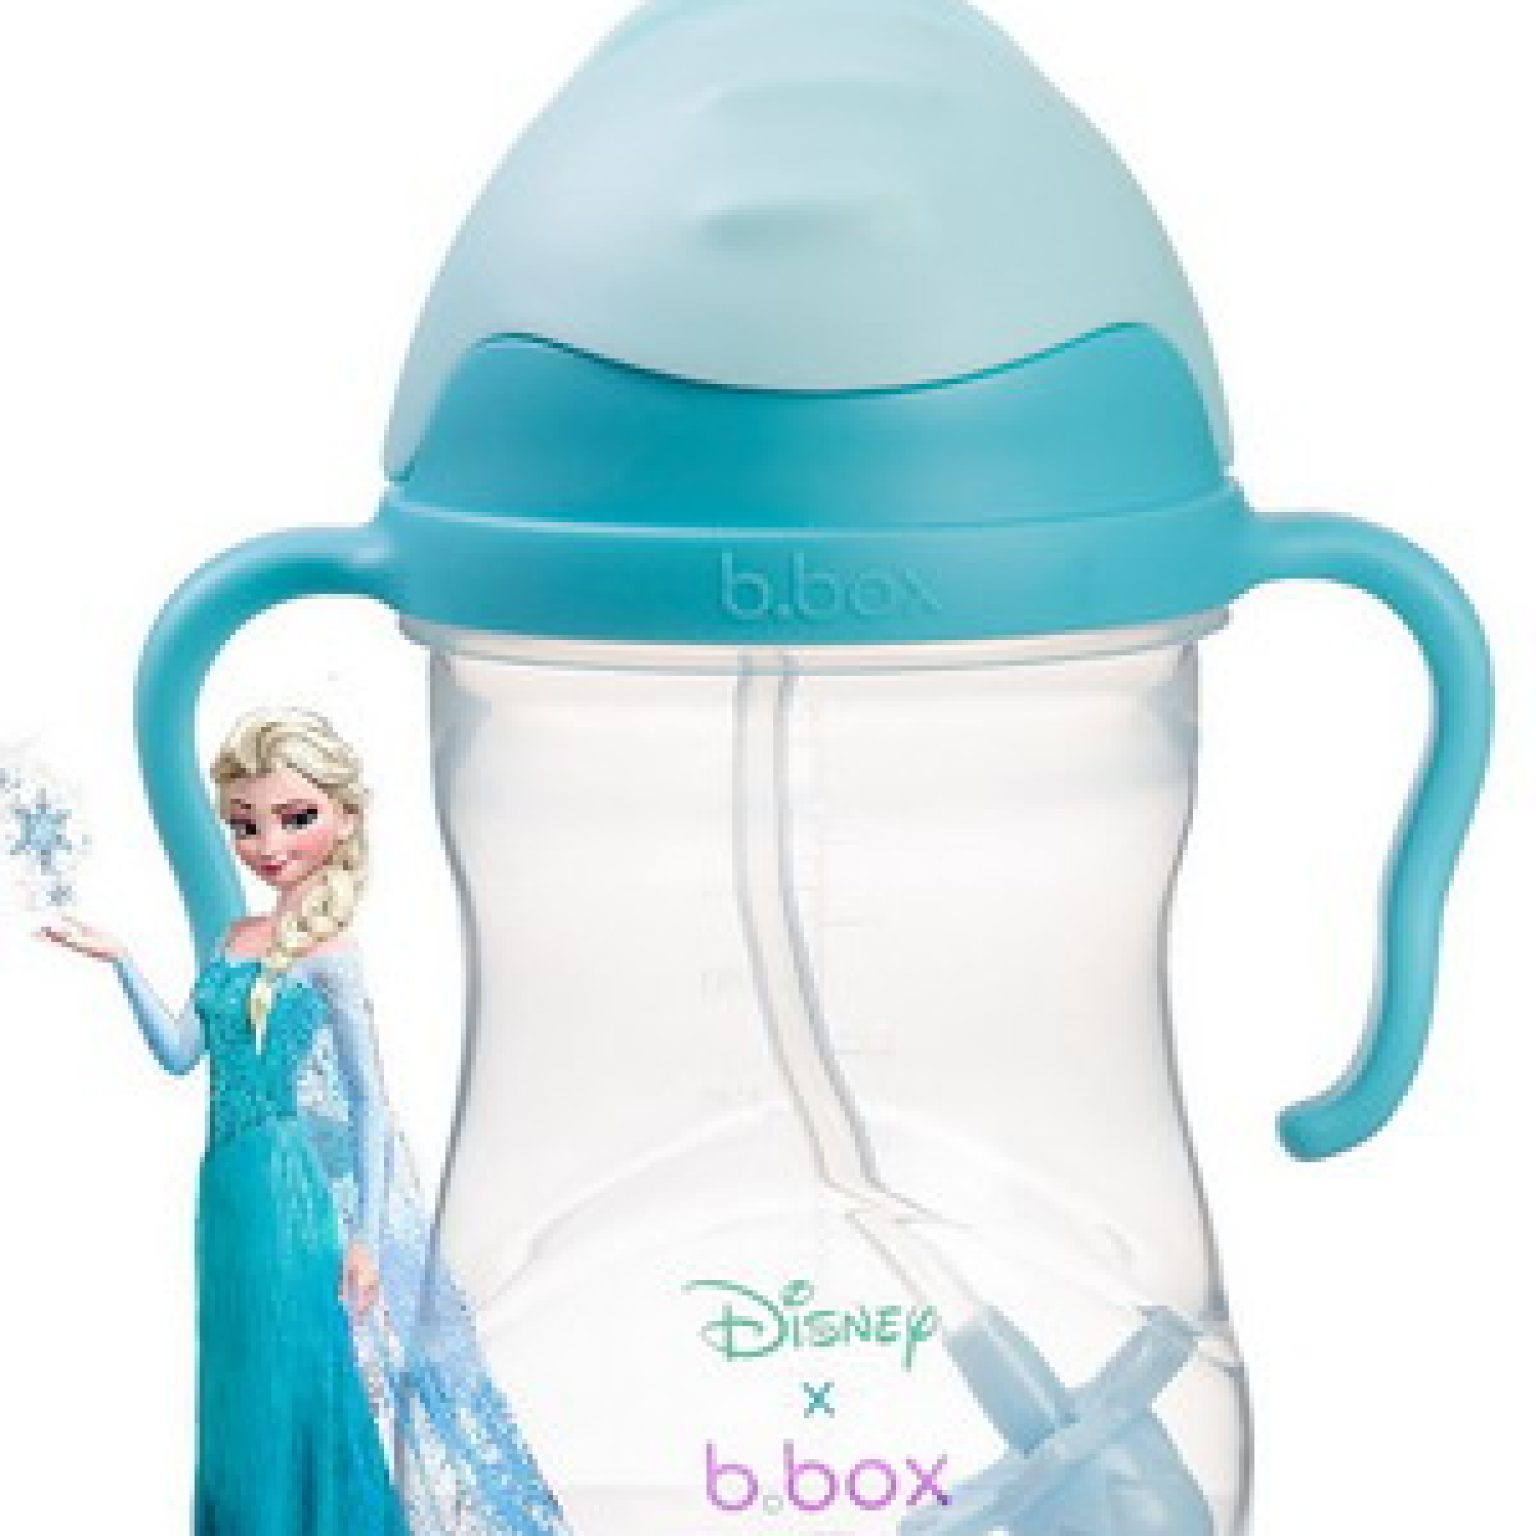 Bình BBOX mãu xanh công chúa Elsa